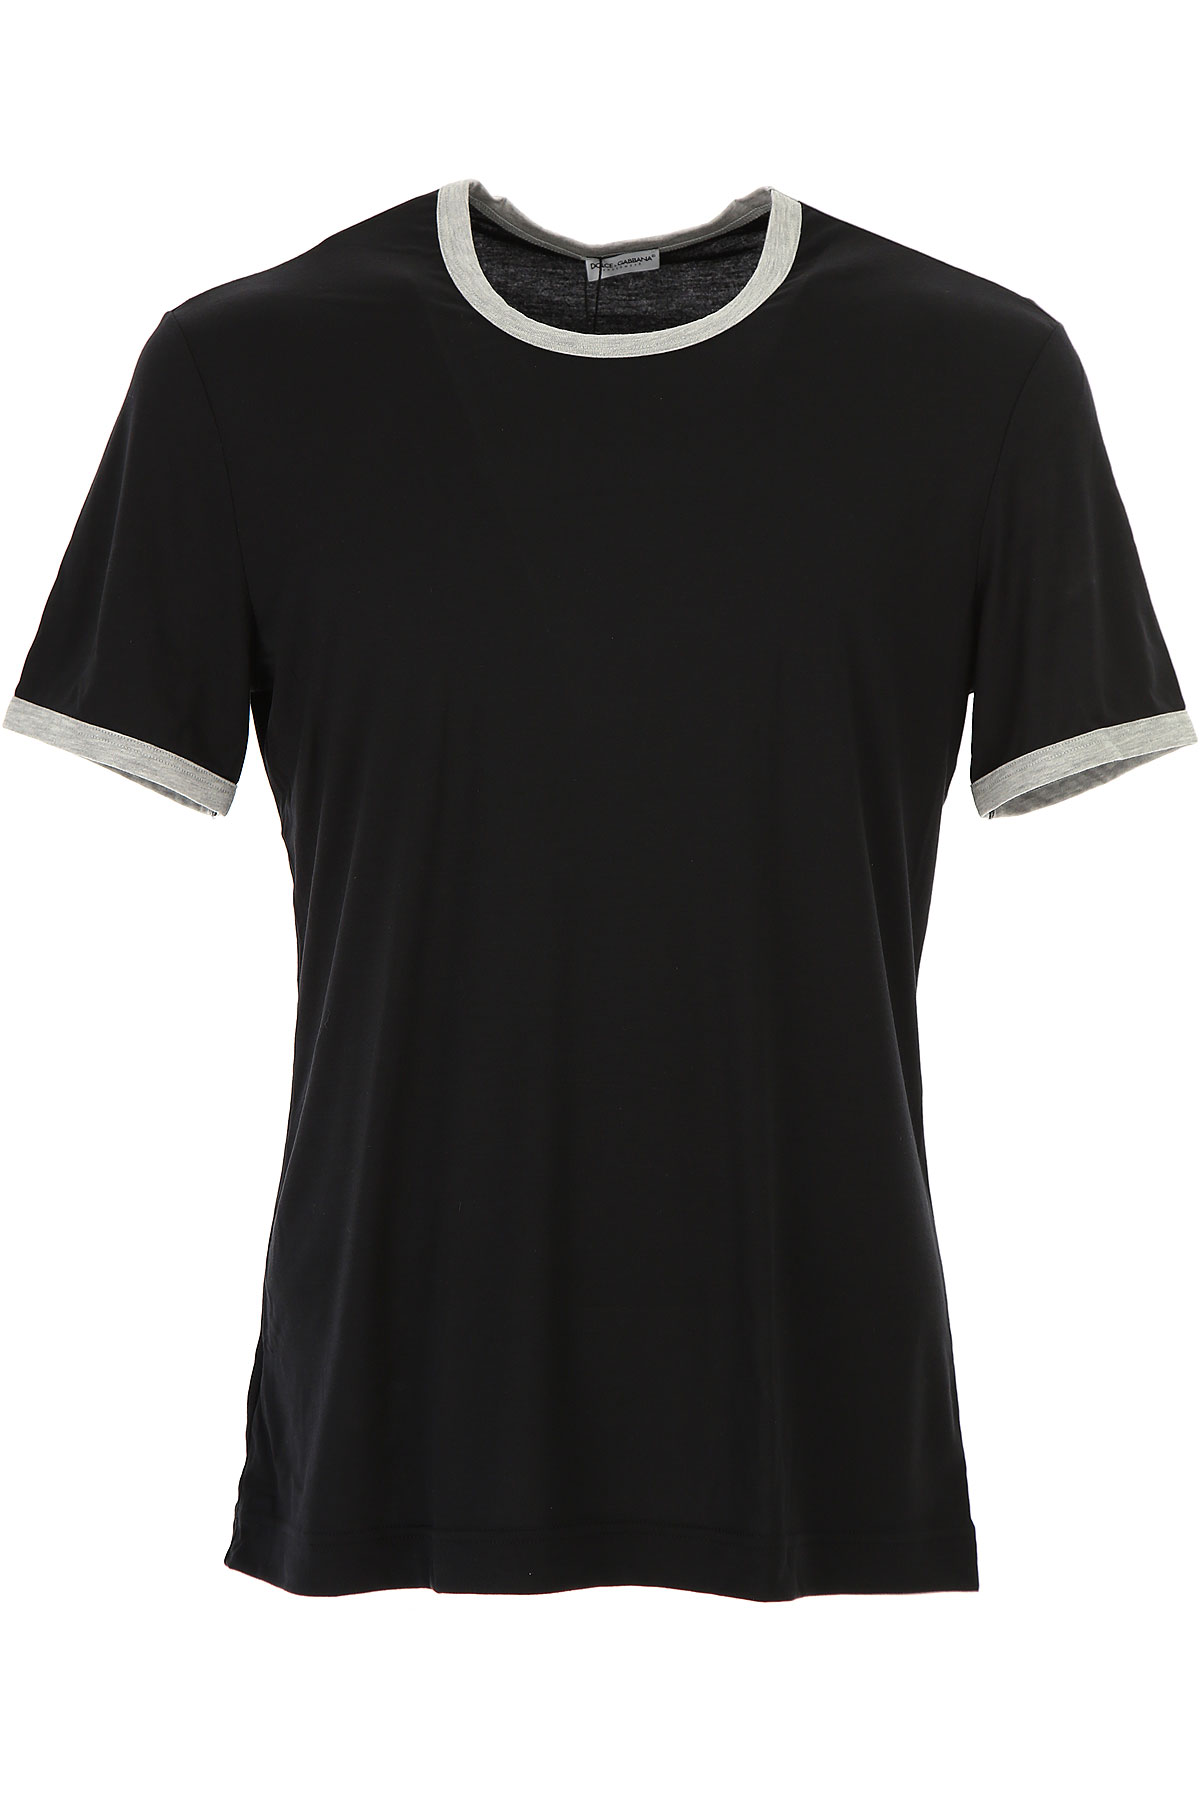 Dolce & Gabbana T-shirt Homme , Noir, Modal, 2017, L M S XL